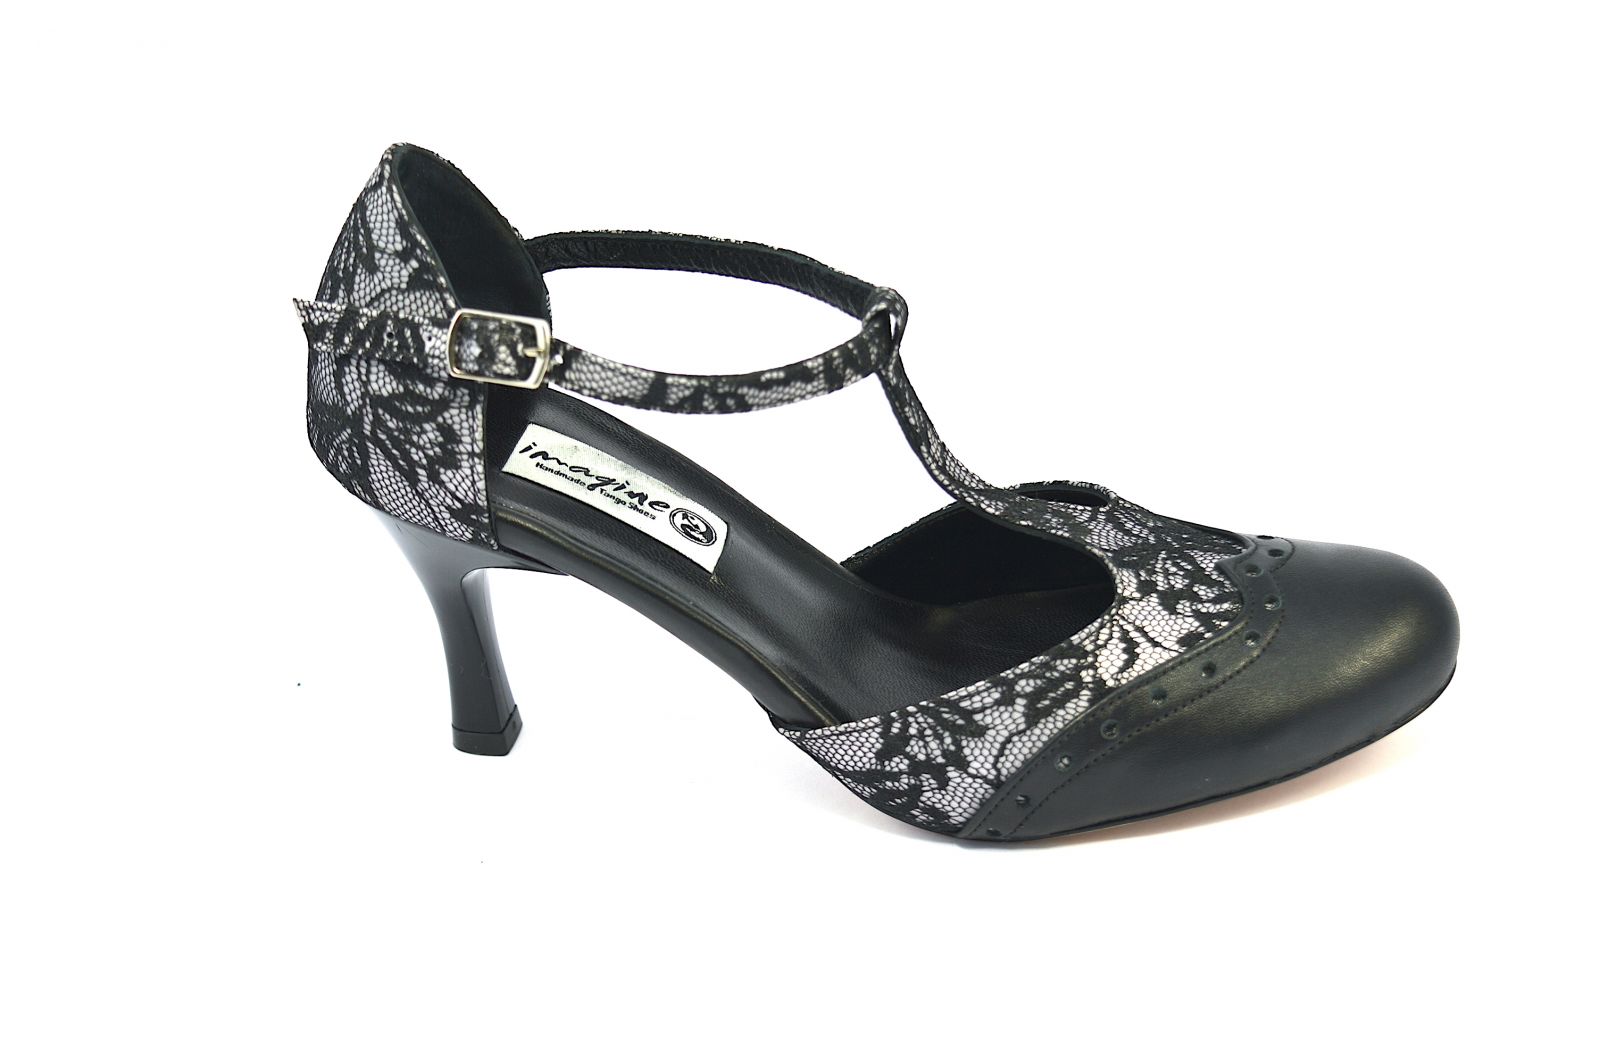 Γυναικείο παπούτσι tango closed toe από μαύρη δαντέλα και μαύρο δέρμα